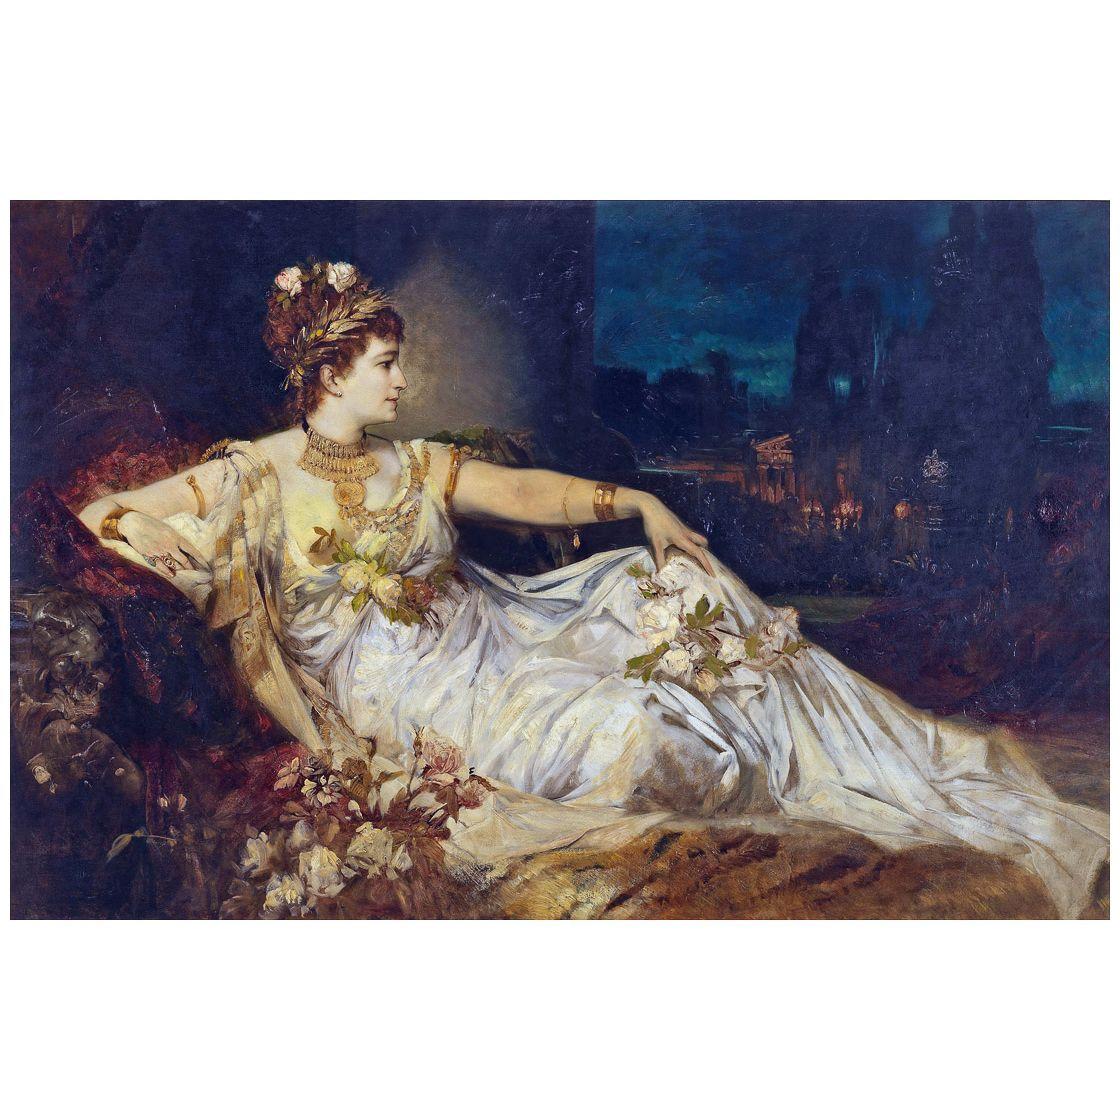 Hans Makart. Charlotte Wolter als Messalina. 1875. Albertina Wien